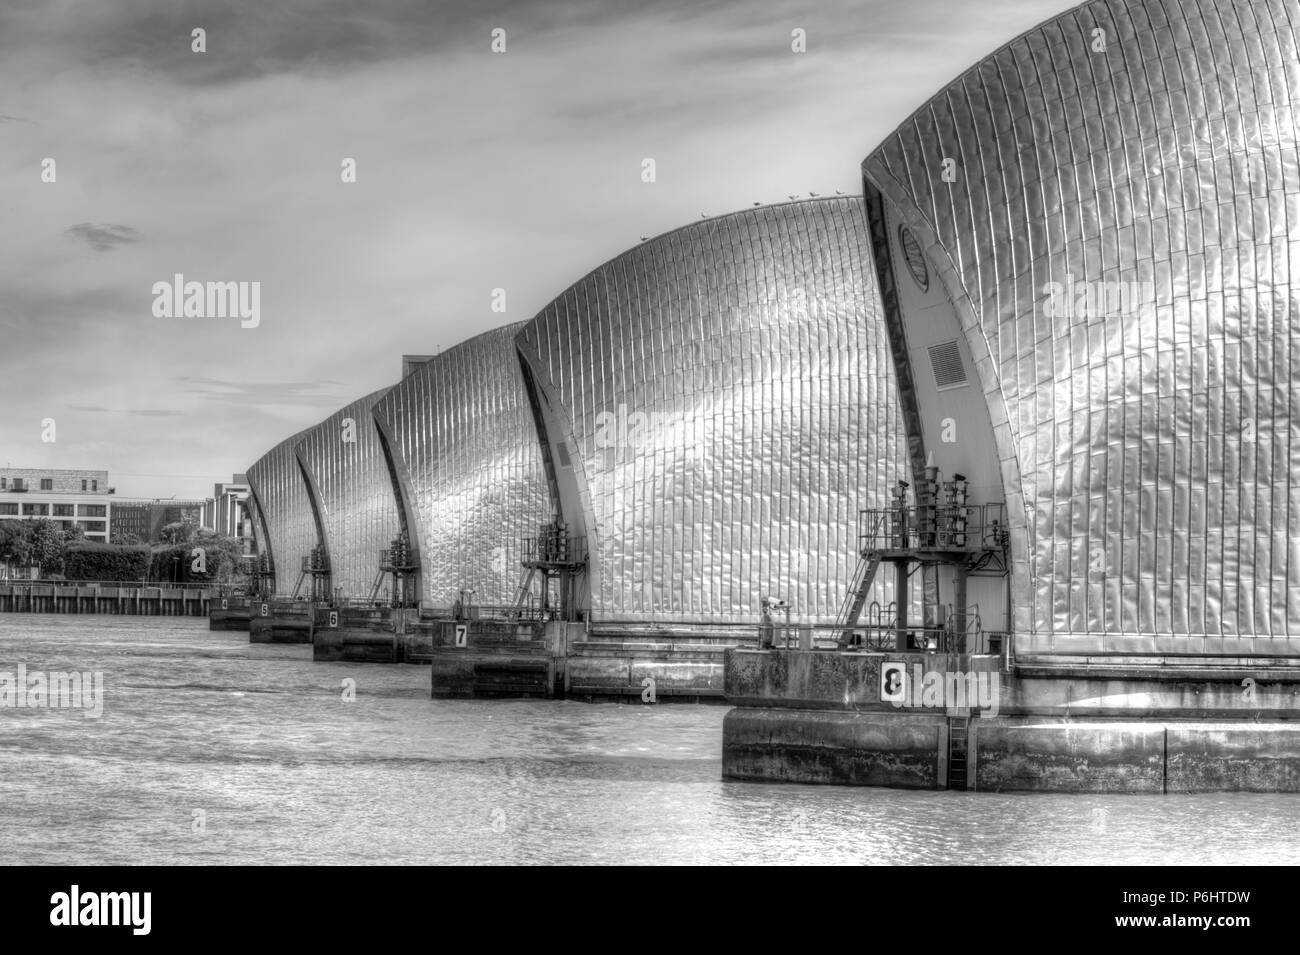 Londres, Royaume-Uni - 23 juin 2018 : Thames Barrier à Woolwich, Londres, Royaume-Uni vue de l'amont Banque D'Images